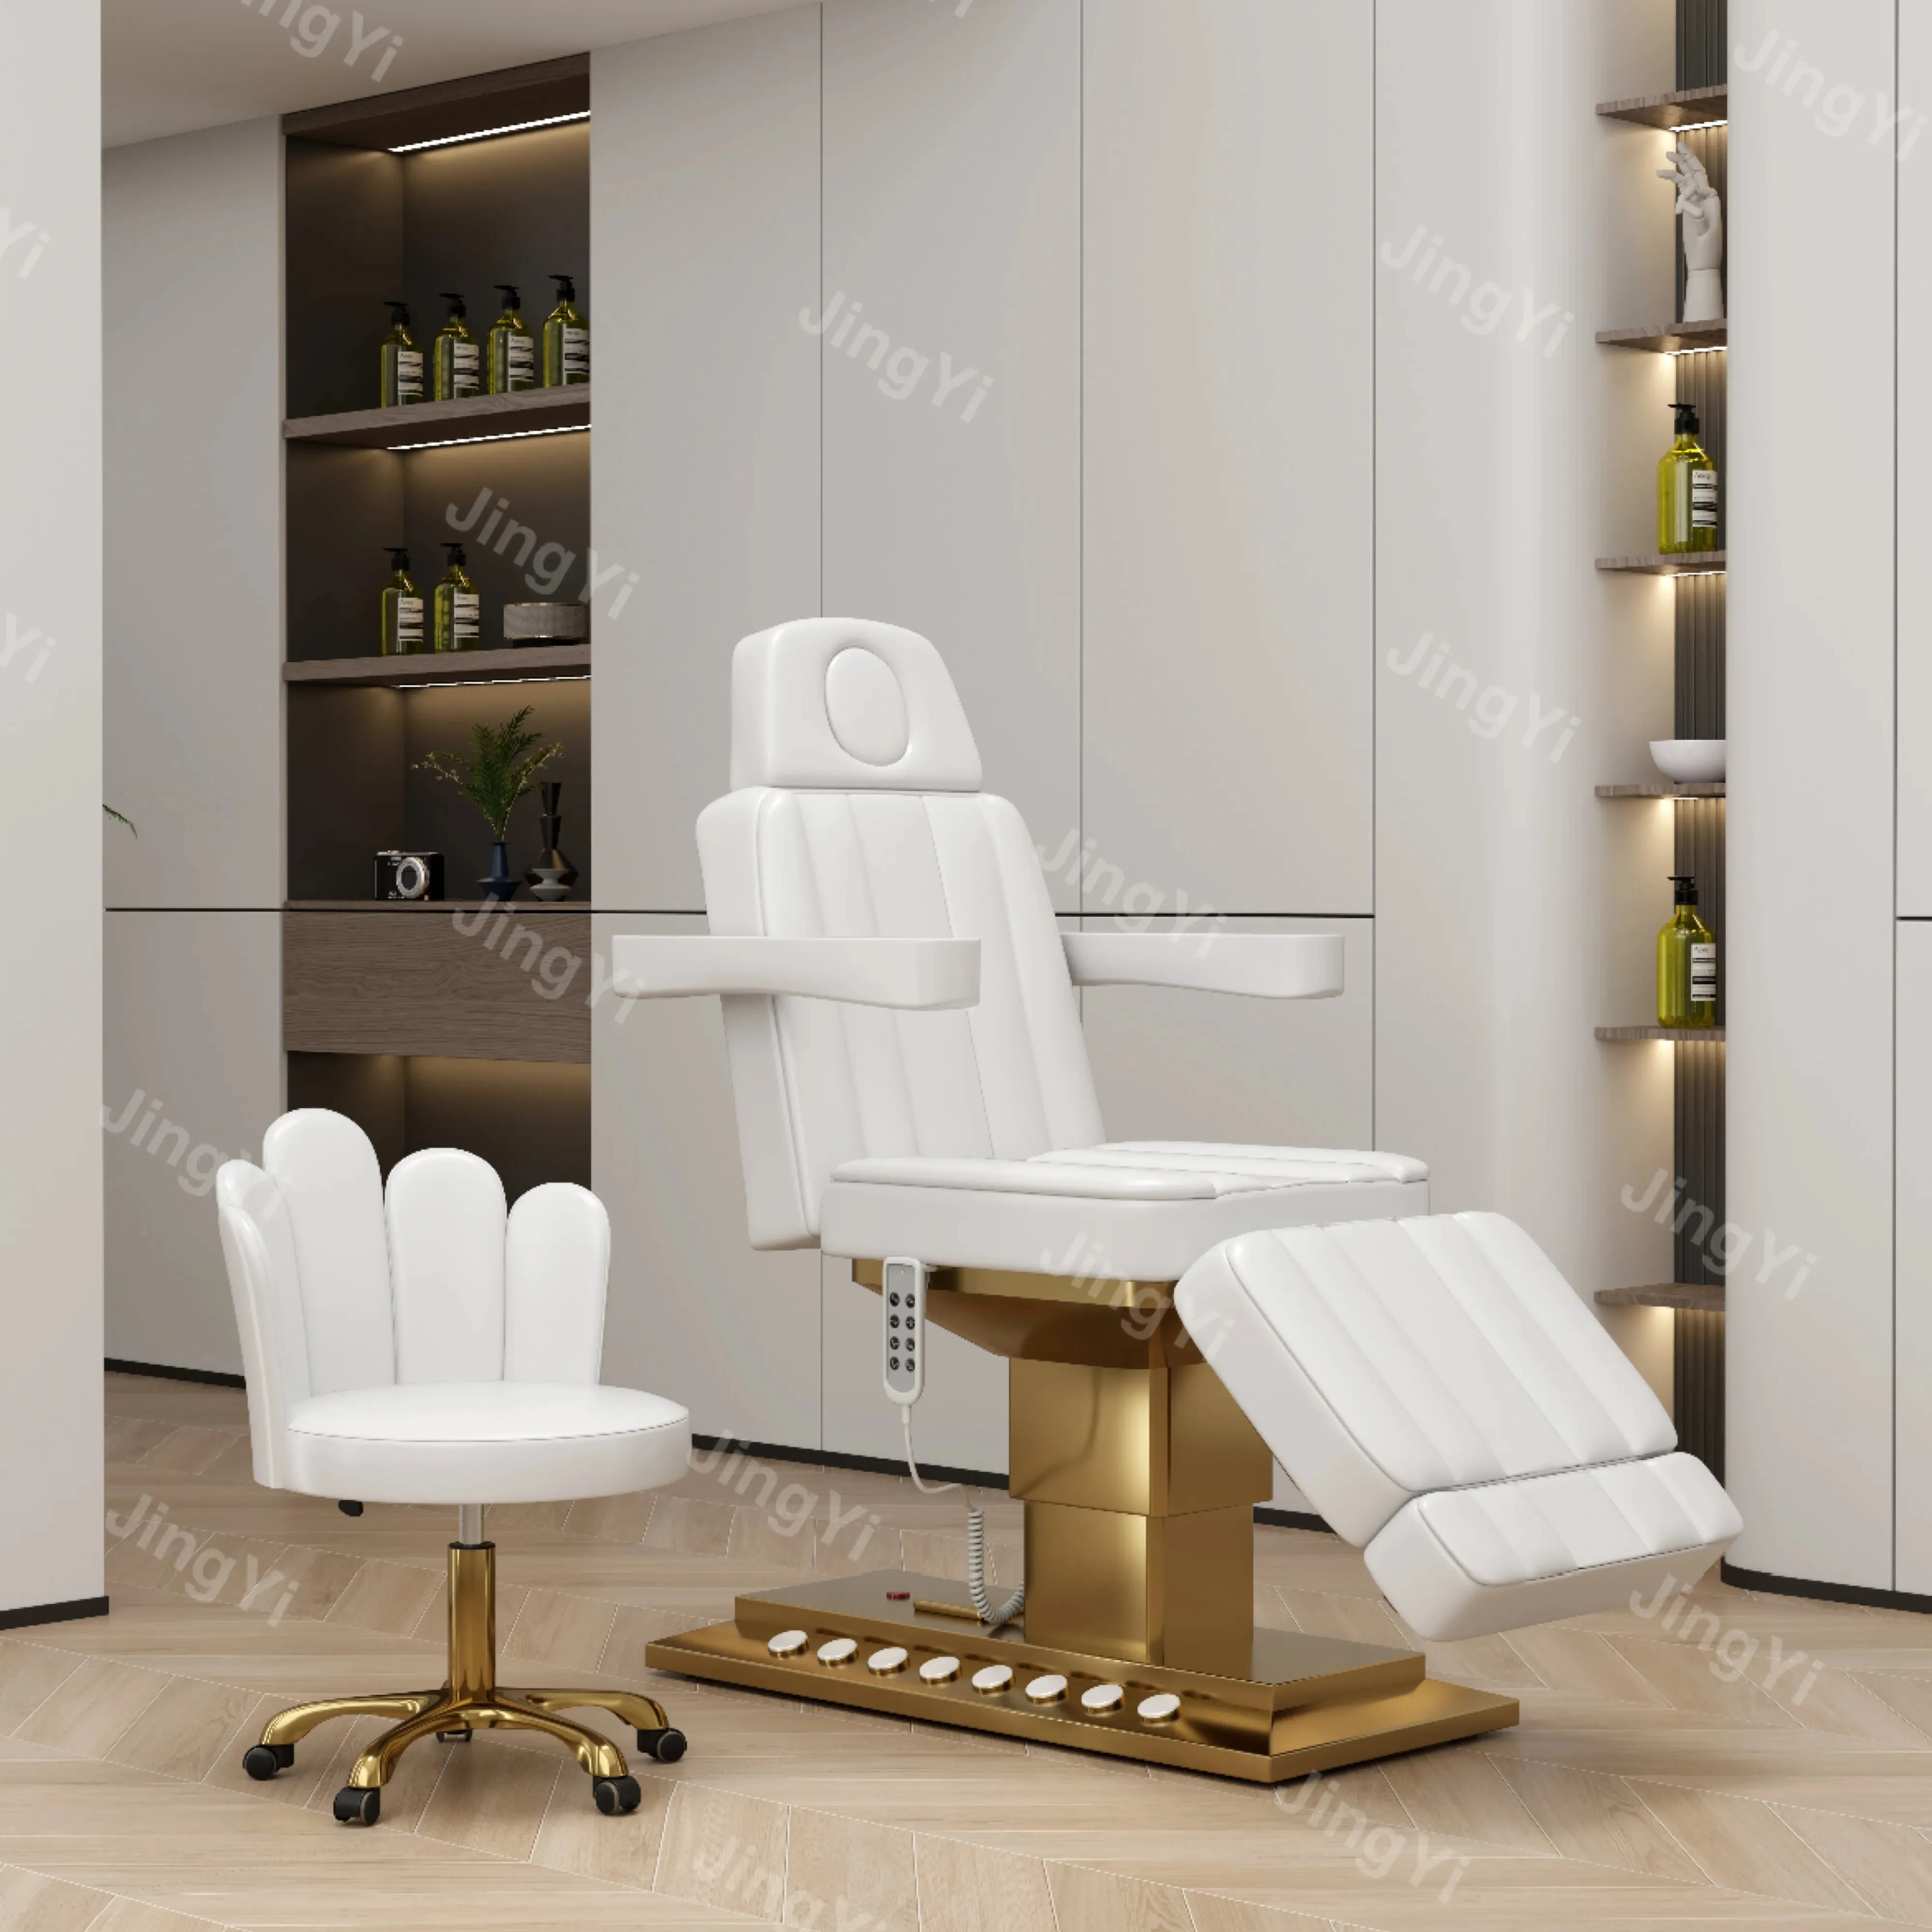 Novo estilo salão mobiliário personalizado cor correspondente aço inoxidável banhado a ouro elétrico controle do pé massagem mesa beleza cama